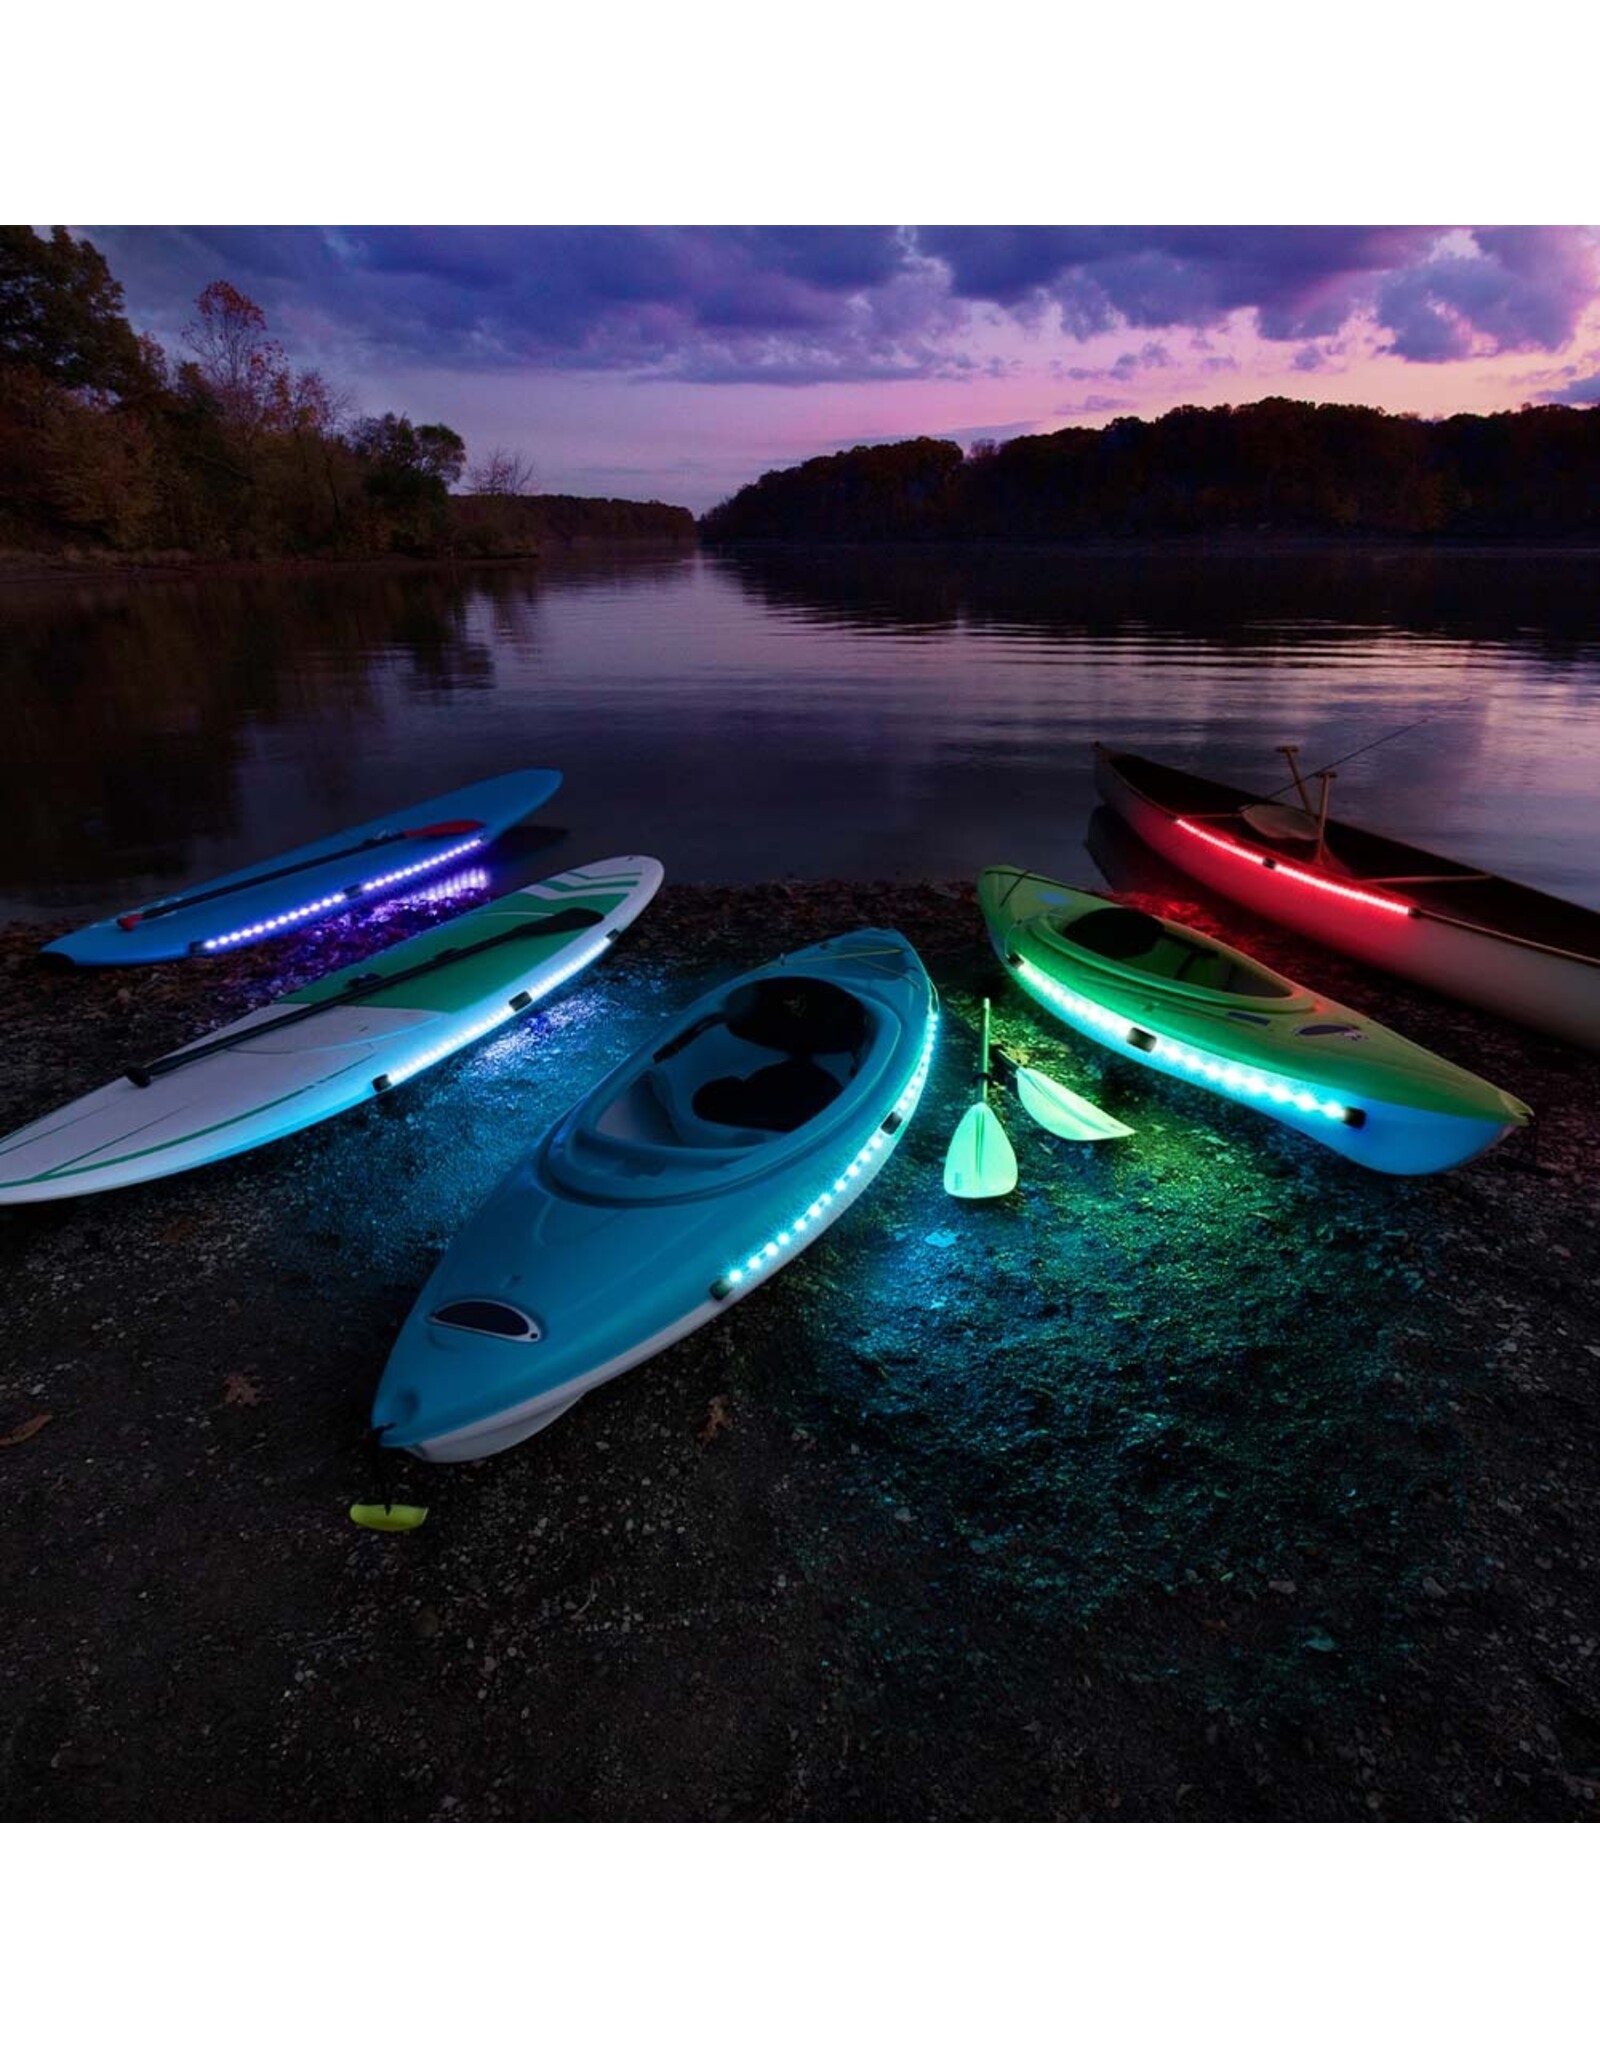 Kayak Brightz